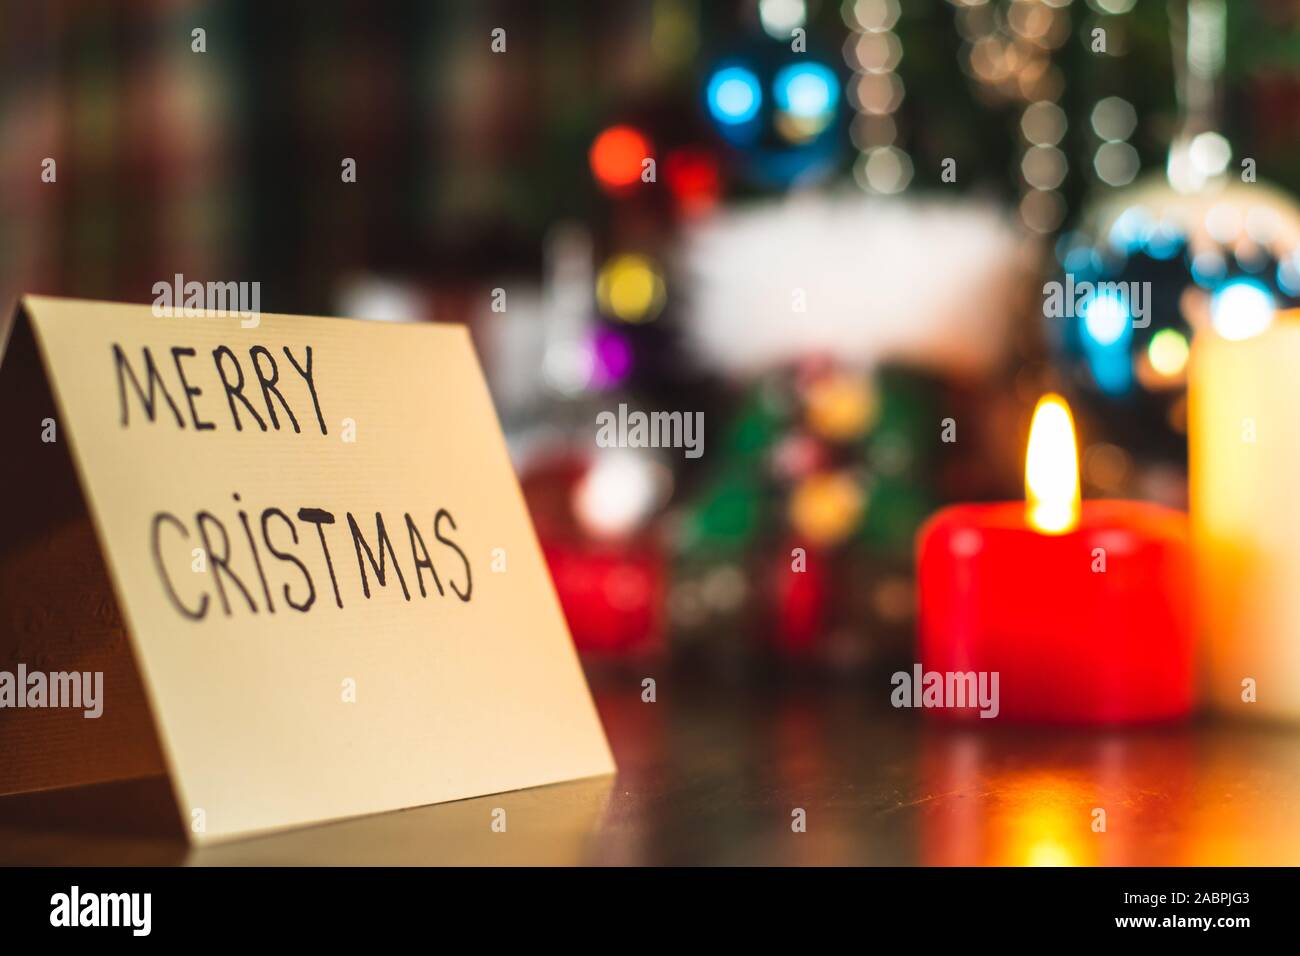 Joyeux Noël écrit sur une carte de vœux sous un arbre de Noël avec des décorations et ornements. Célébration festive. Banque D'Images